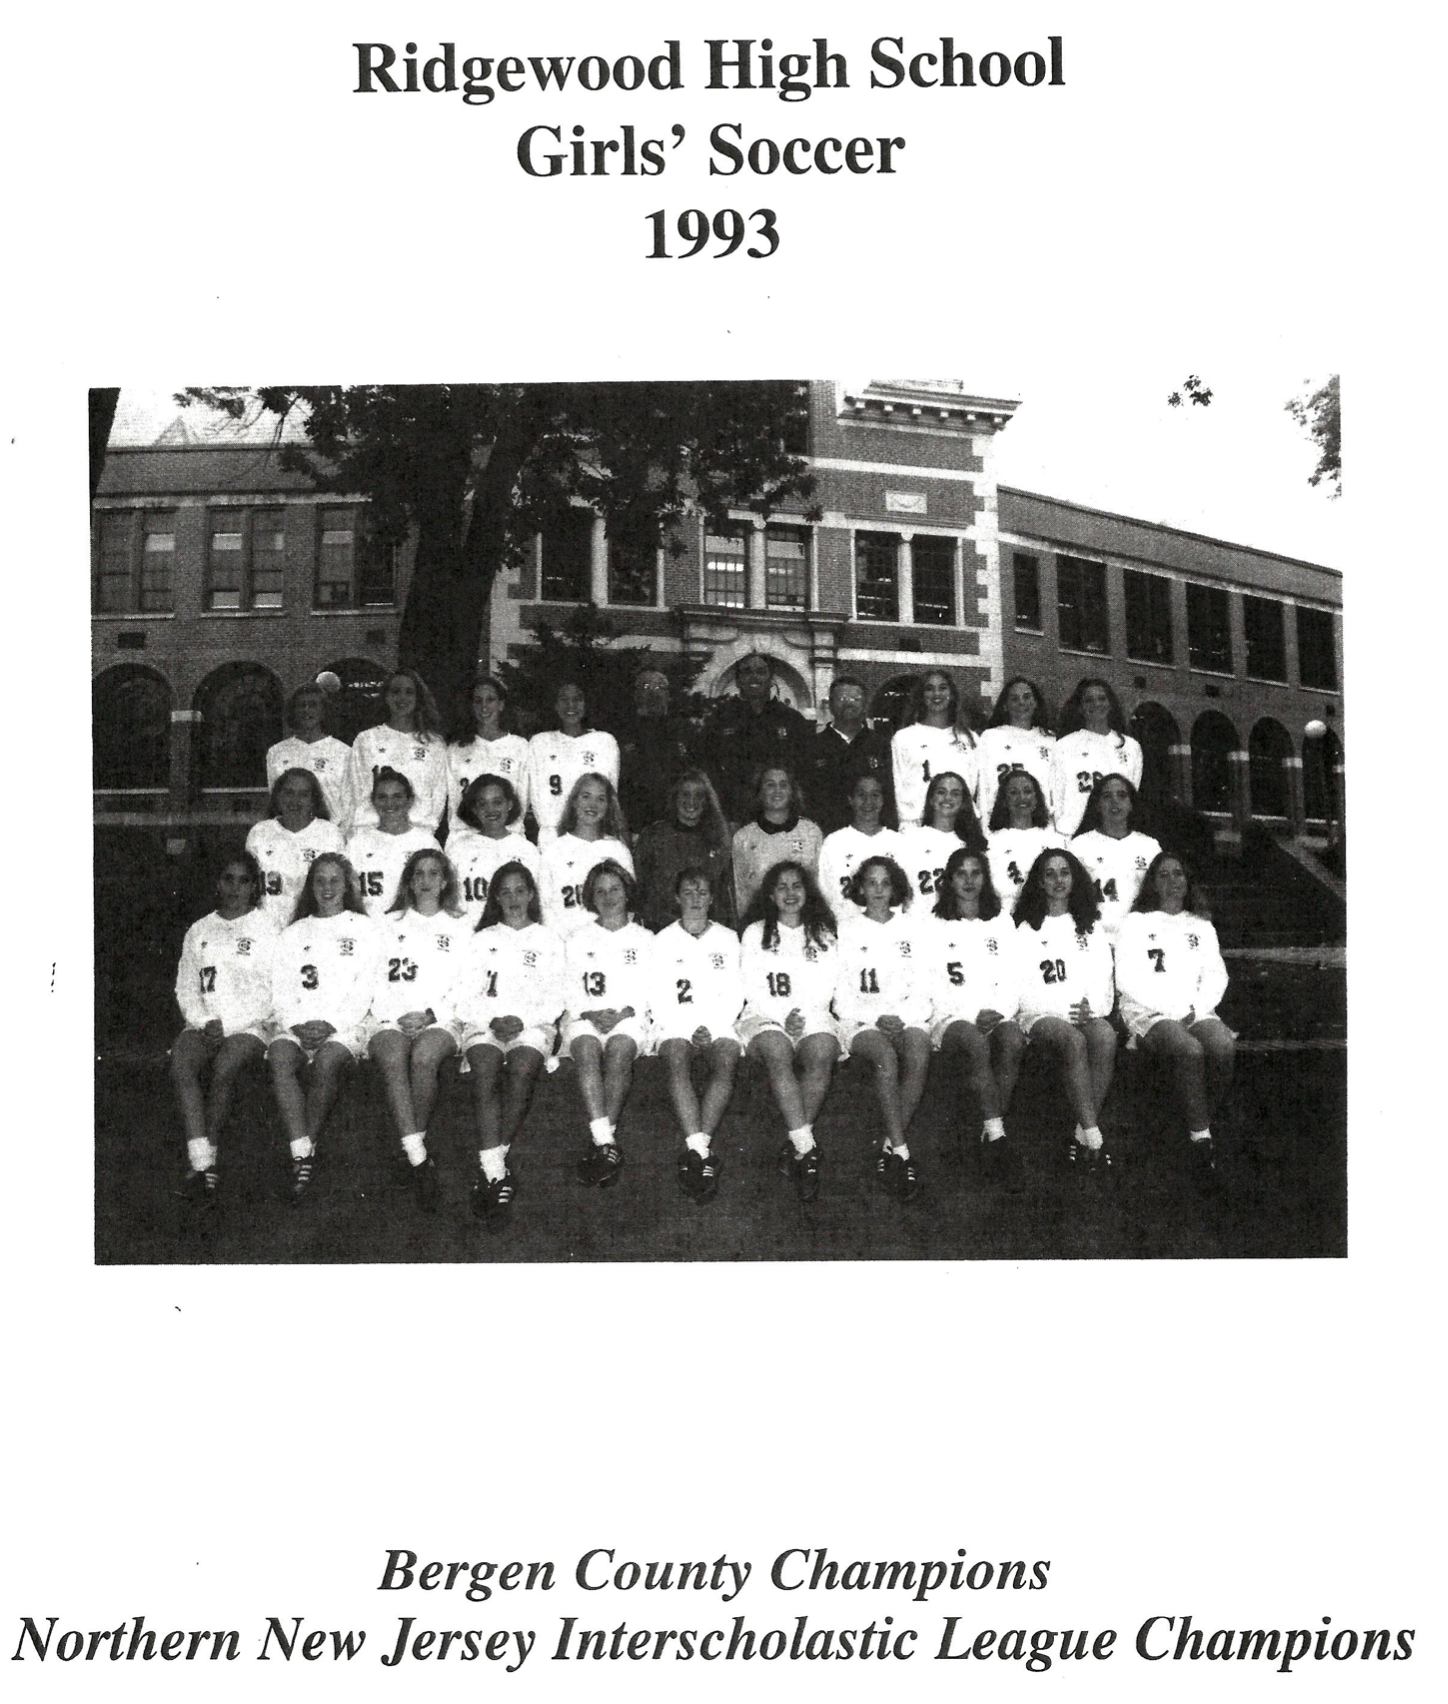 1993 Girls’ Soccer Team